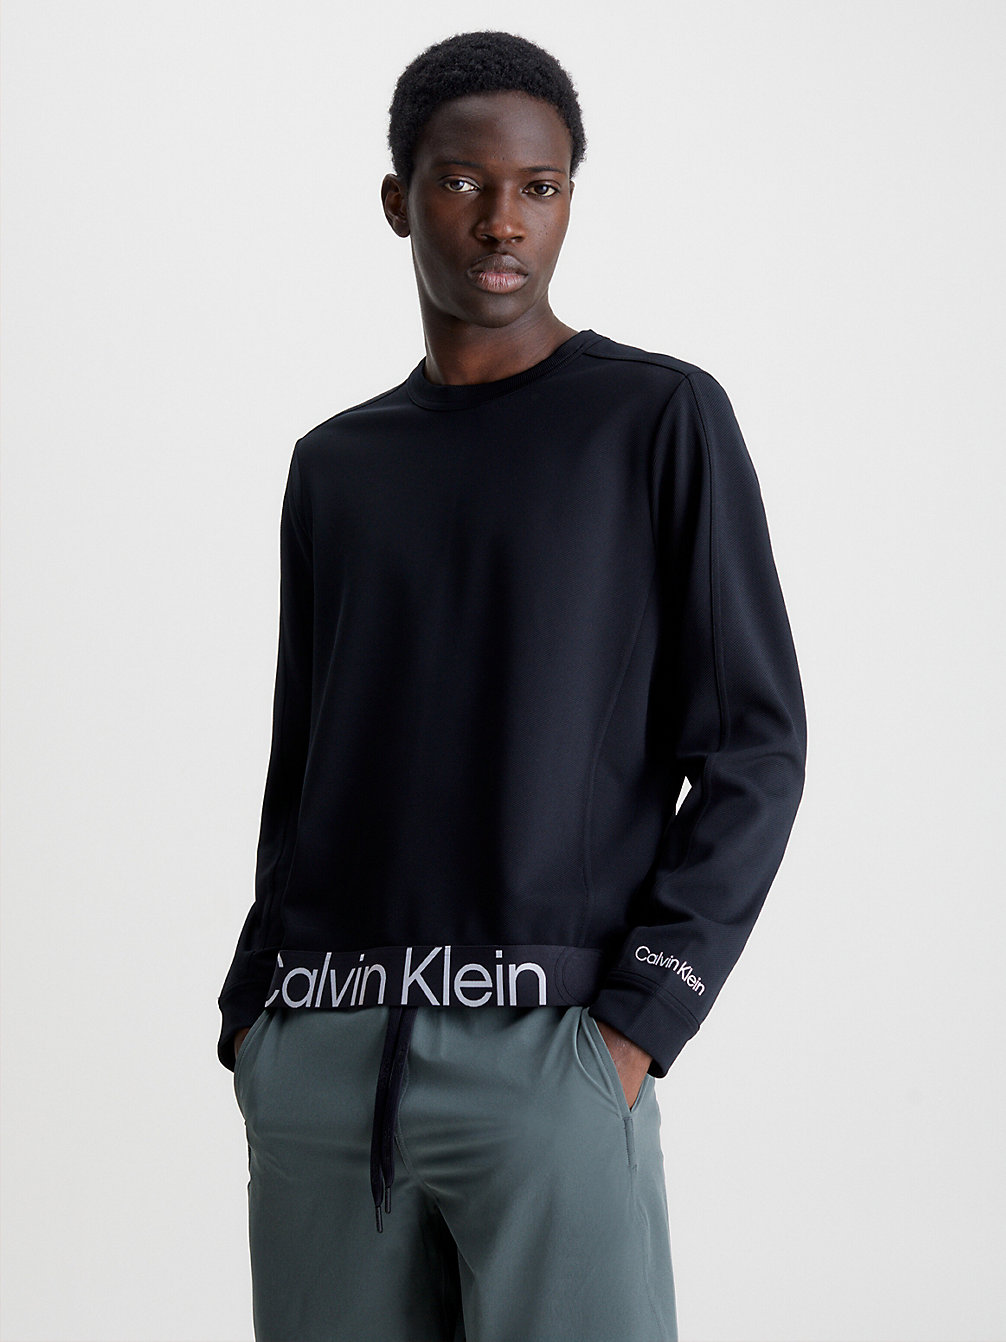 BLACK BEAUTY Sweatshirt Mit Twill-Struktur undefined Herren Calvin Klein